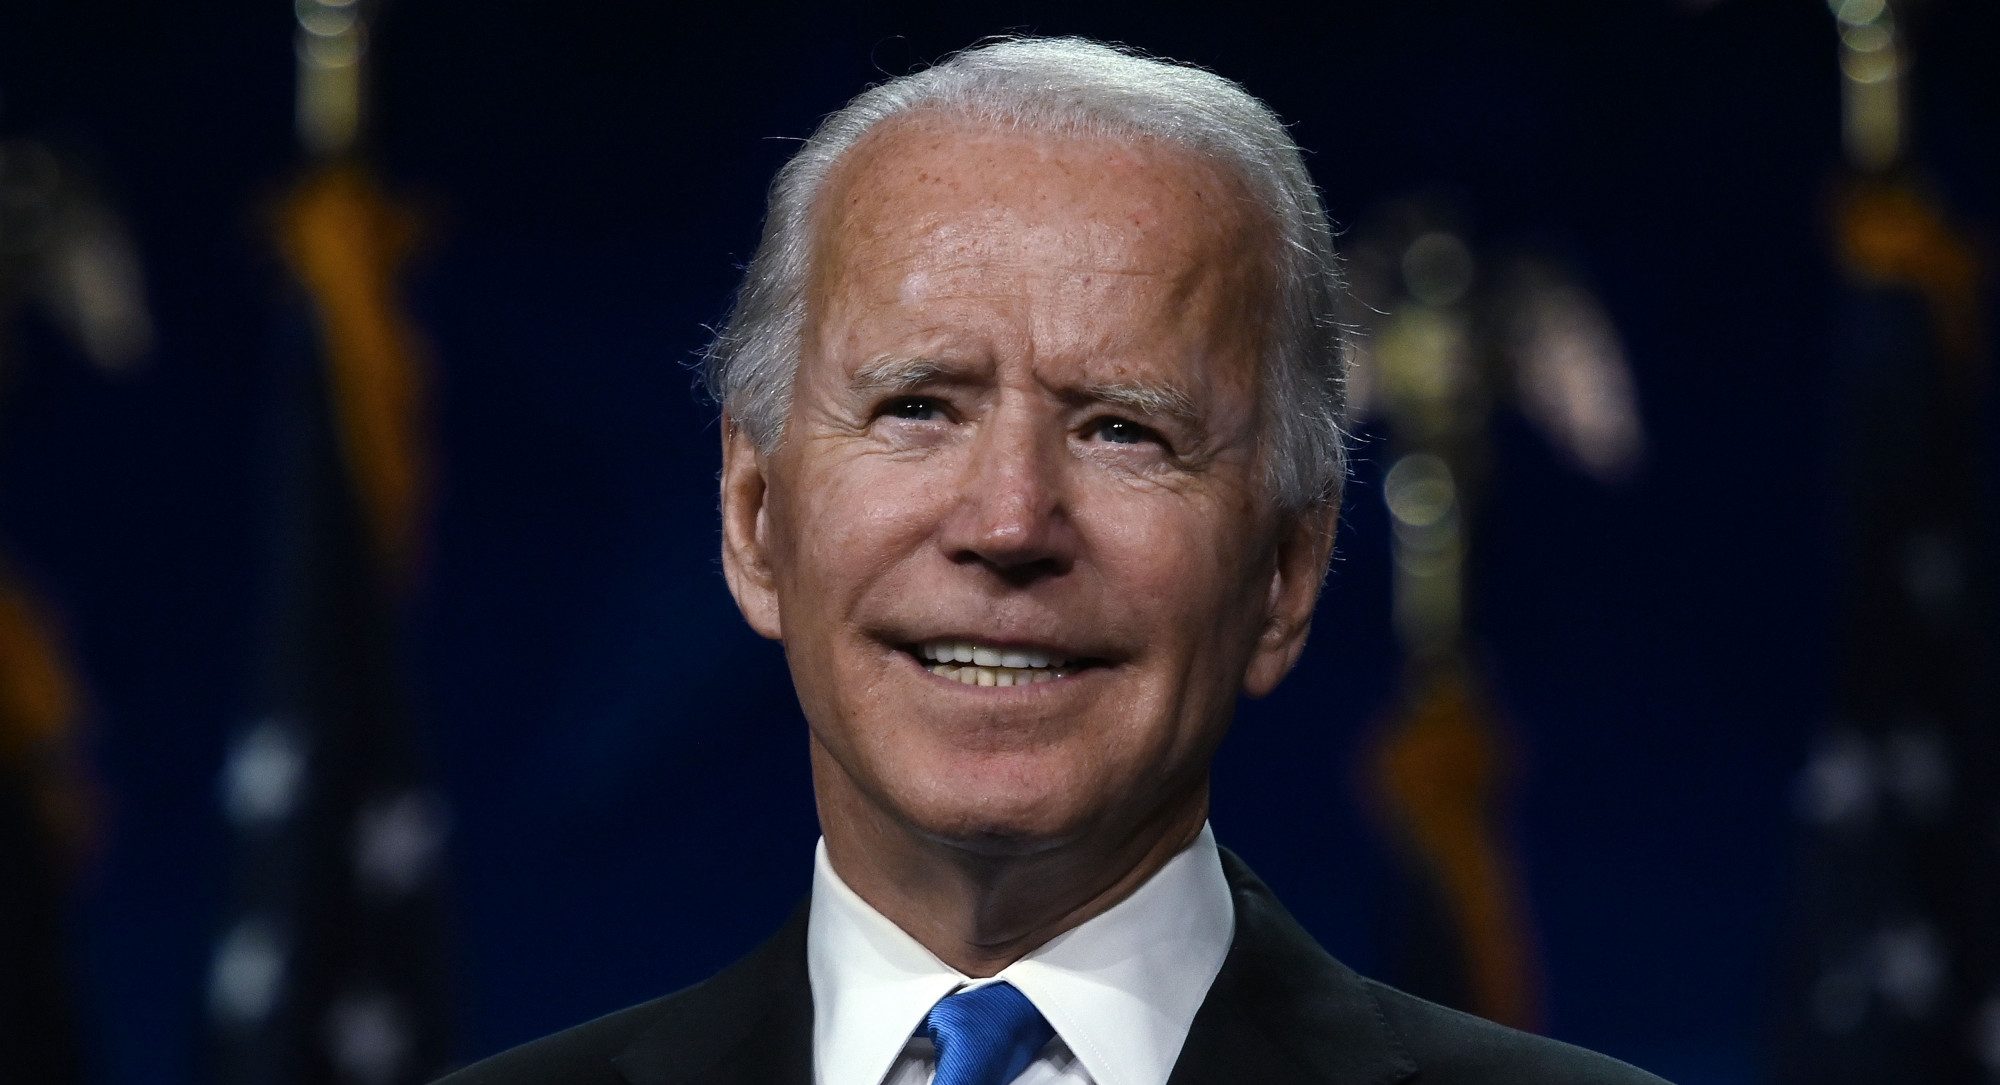 Biden Accepts Nomination, Plans Mask Order